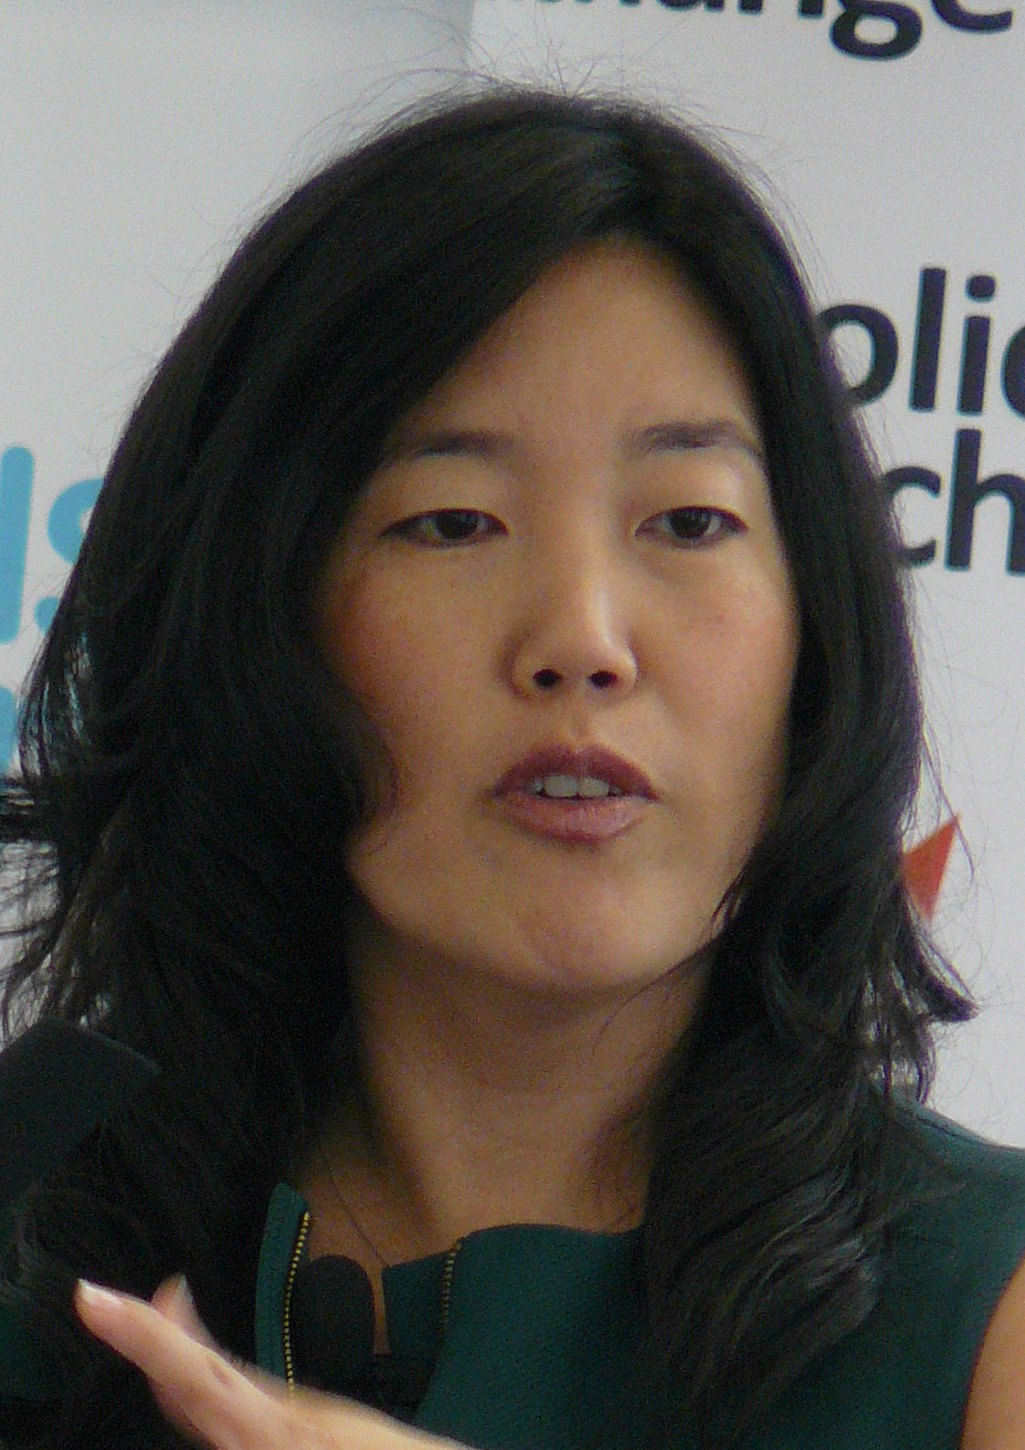 Michelle Rhee